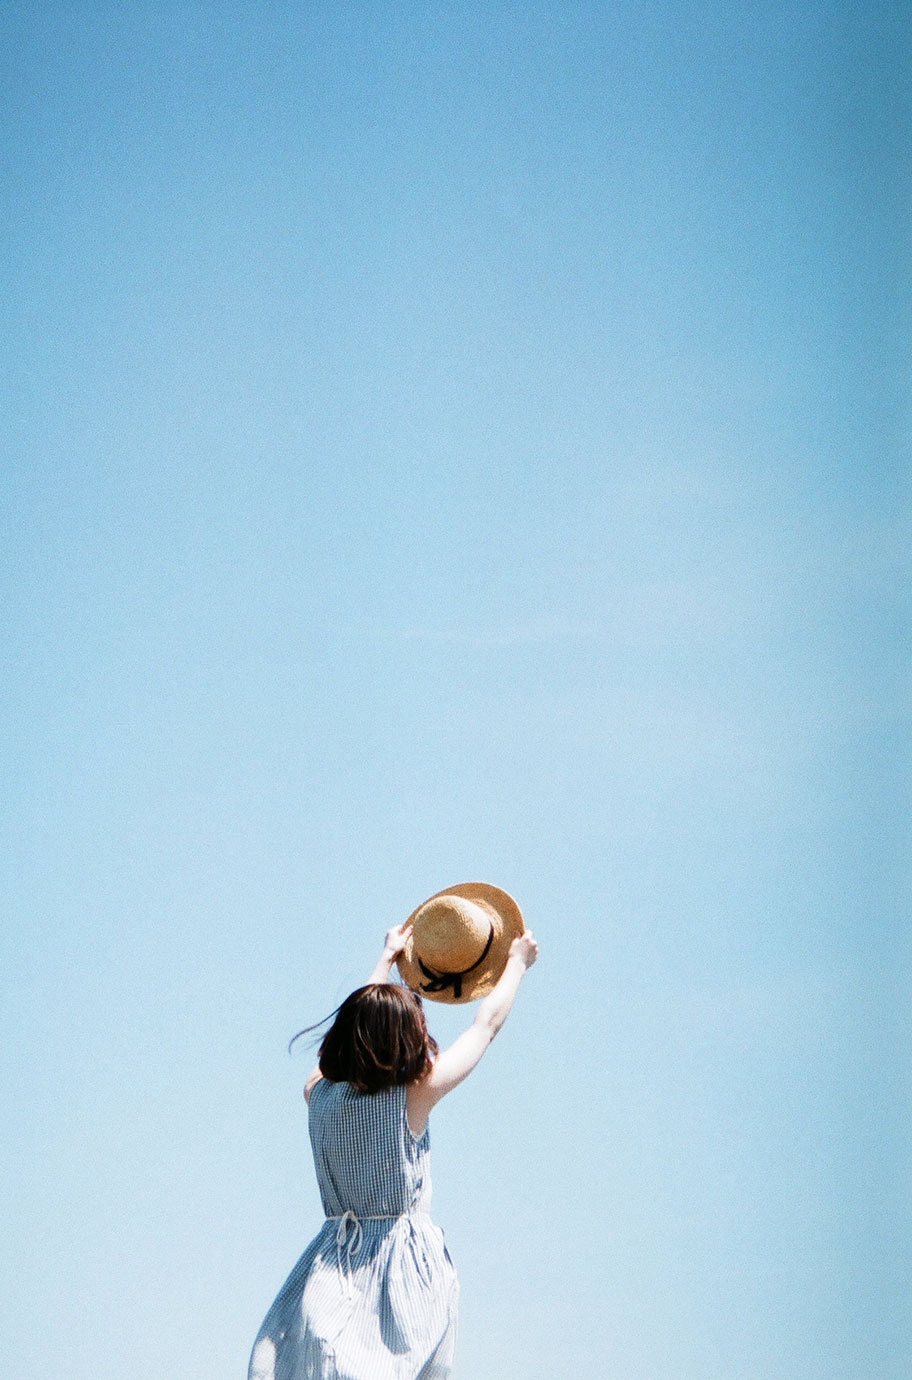 青空に麦わら帽子をかざした女性の写真